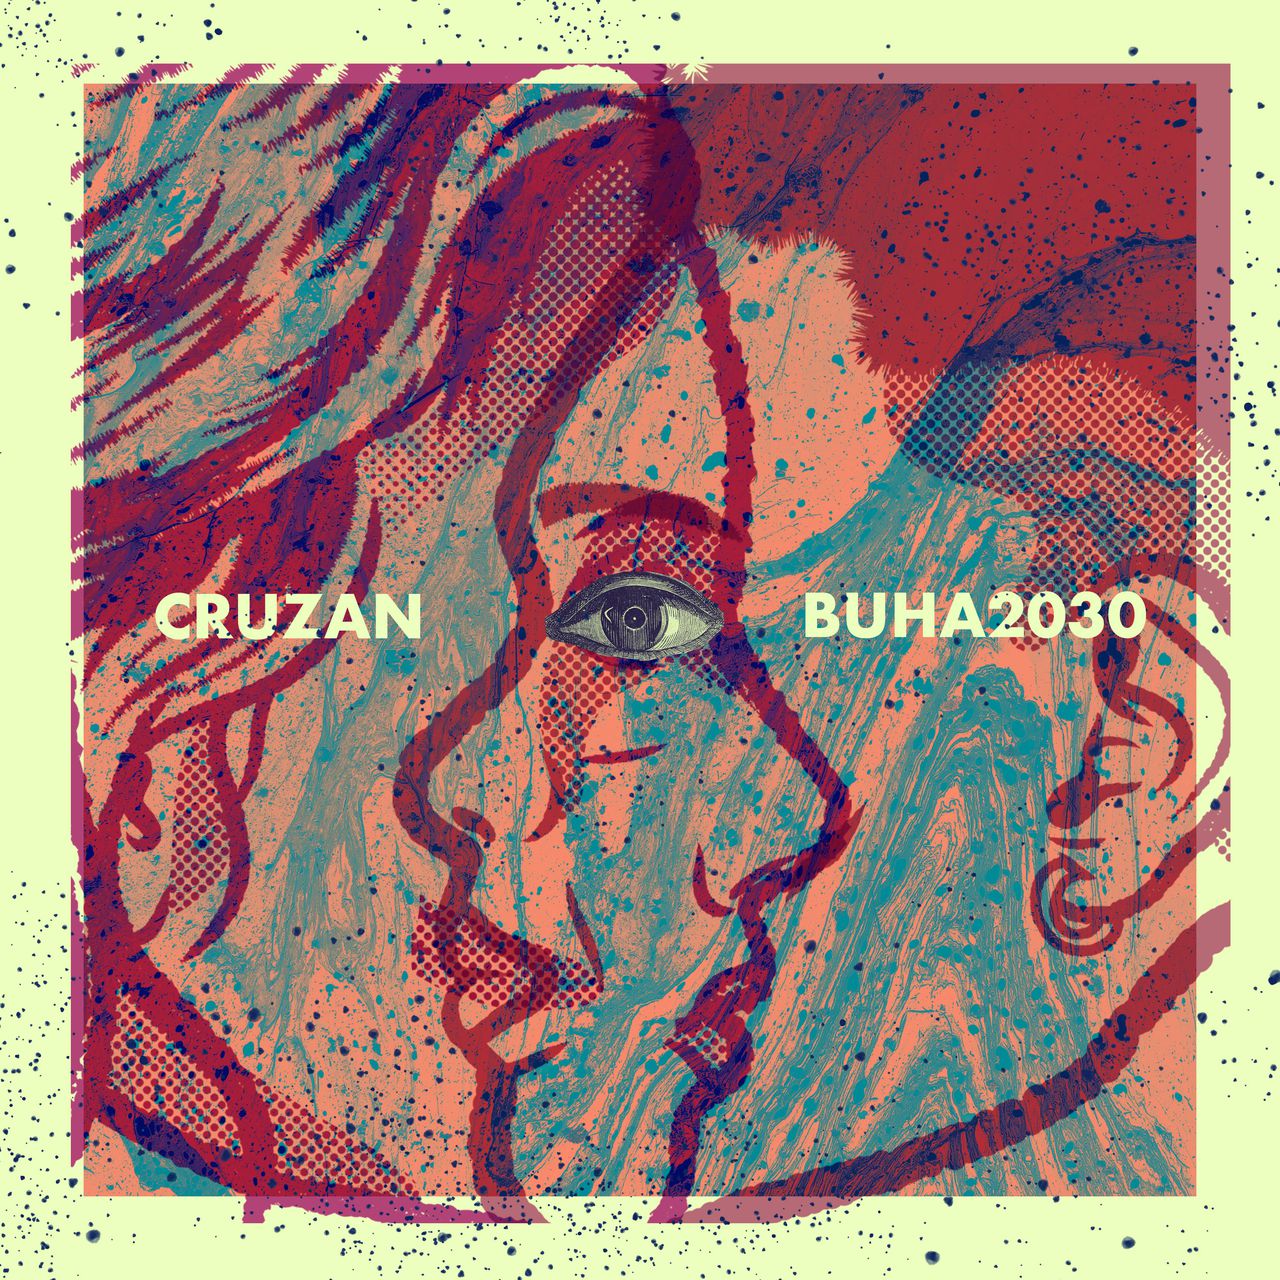 El arte del sencillo "Cruzan", del nuevo disco, es de Diego Portilla (@eslaquer).